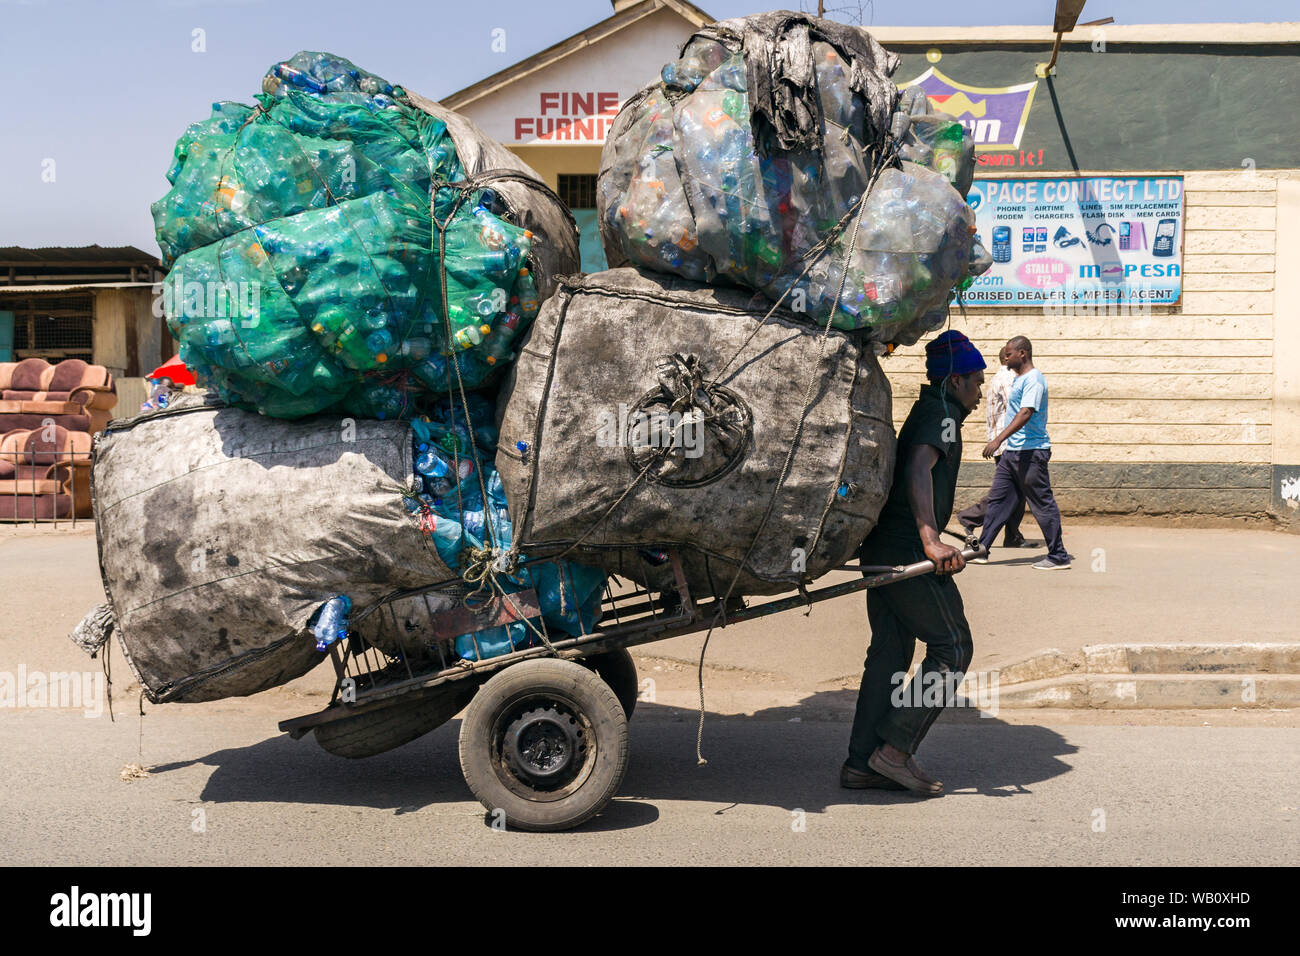 Carrello a mano estrattore trasportare grandi sacchi riempiti con materiale plastico di riciclo, Nairobi, Kenia Foto Stock